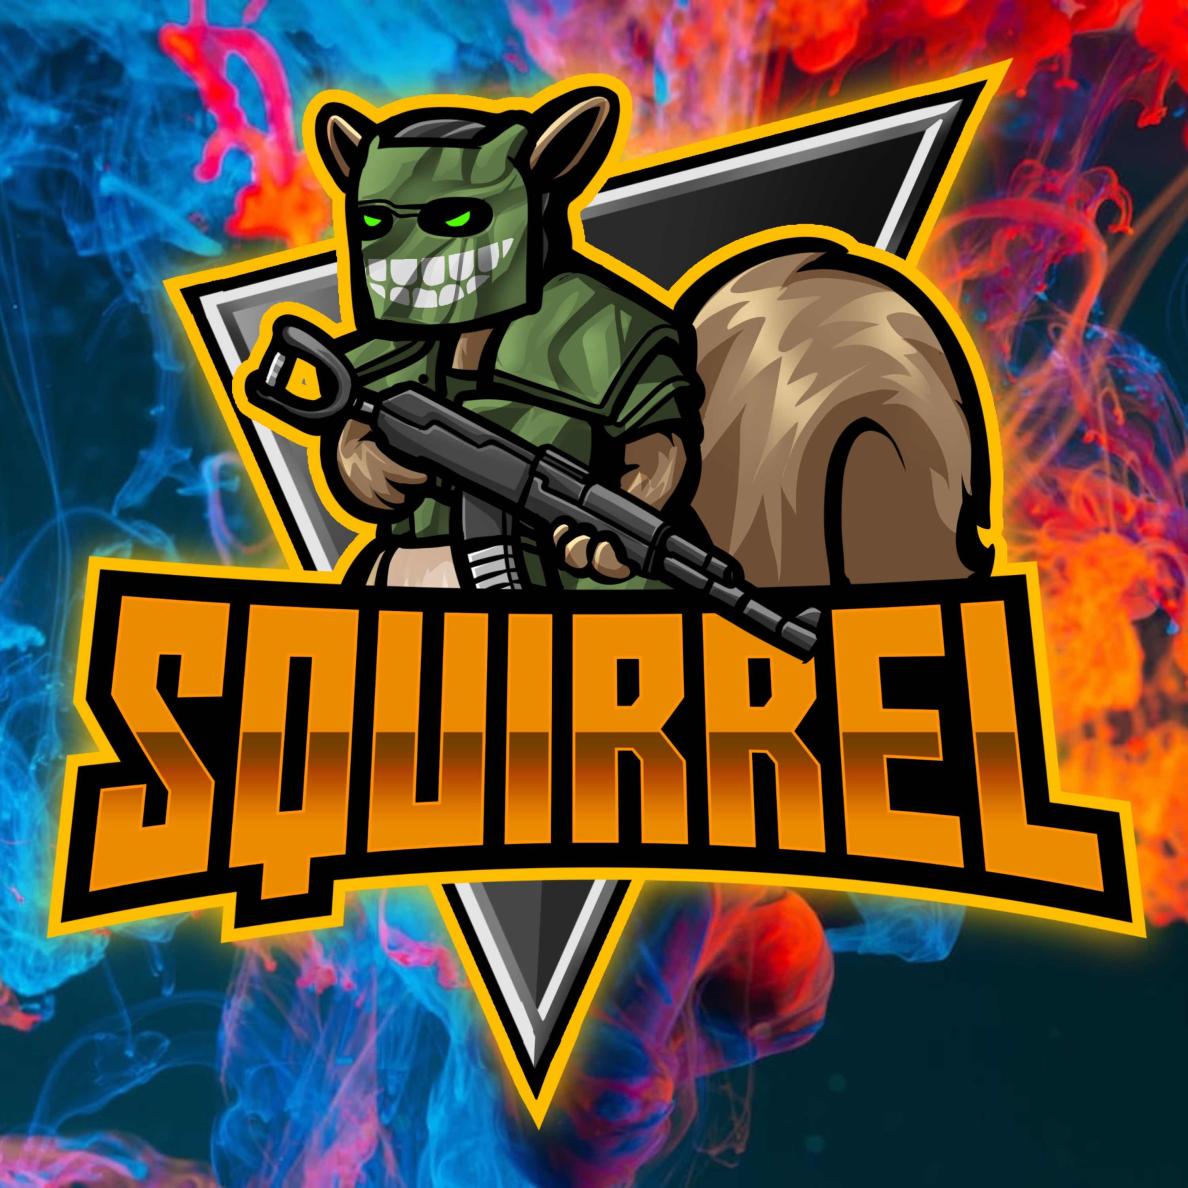 Avatar of Squirrel